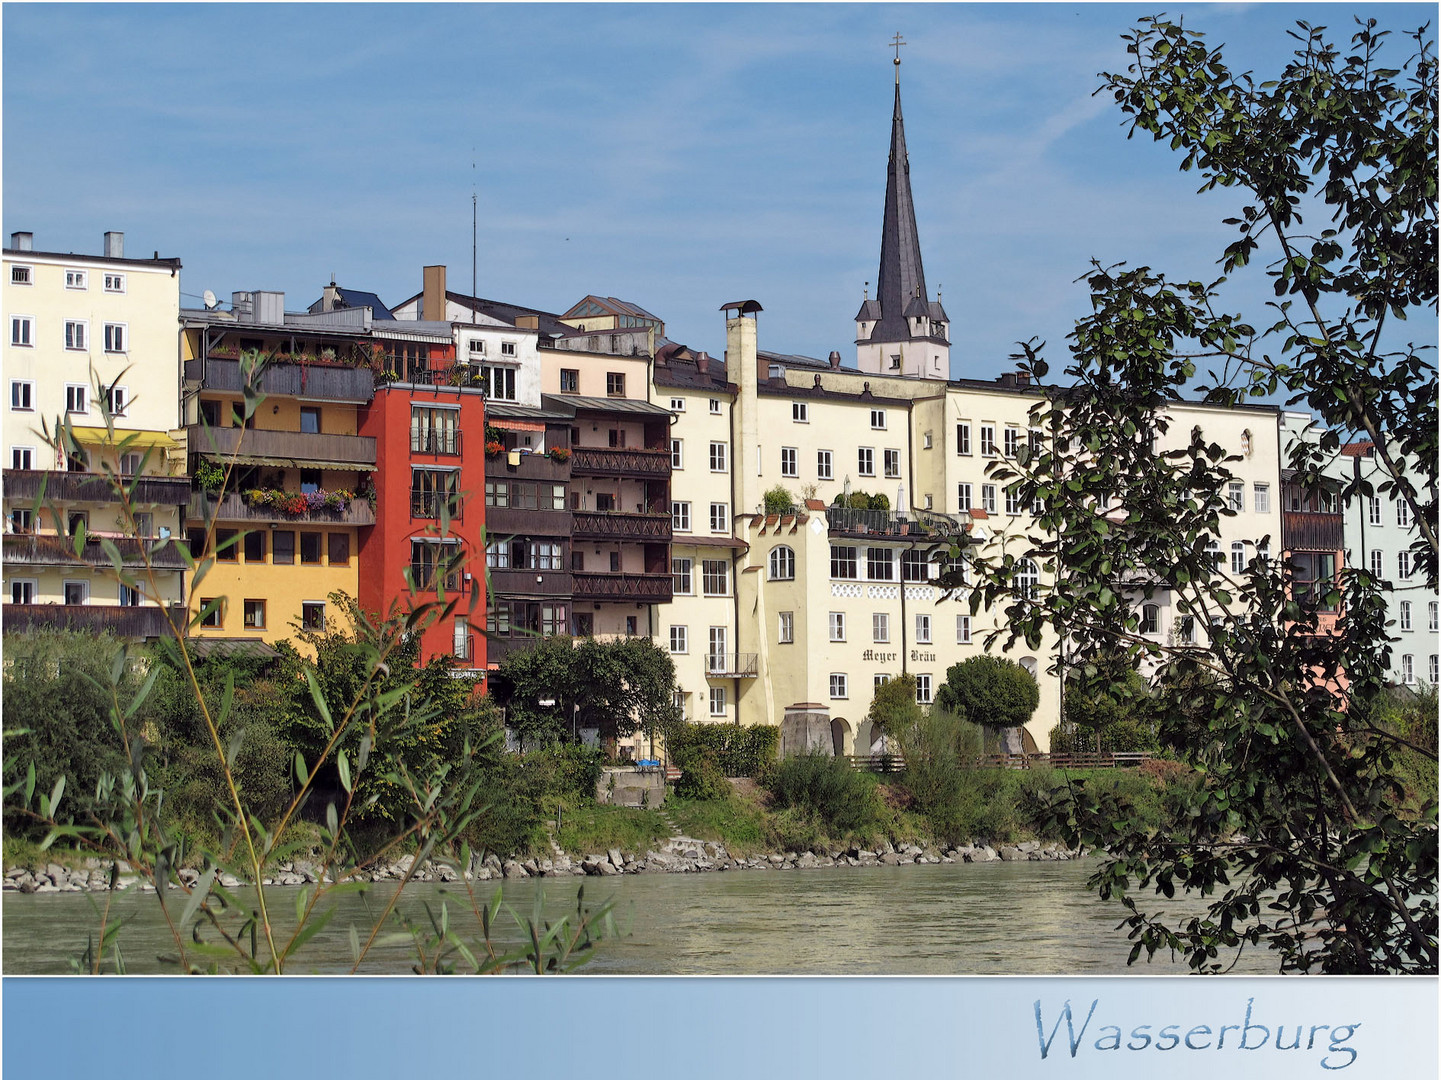 Wasserburg am Inn Foto & Bild | deutschland, europe ...